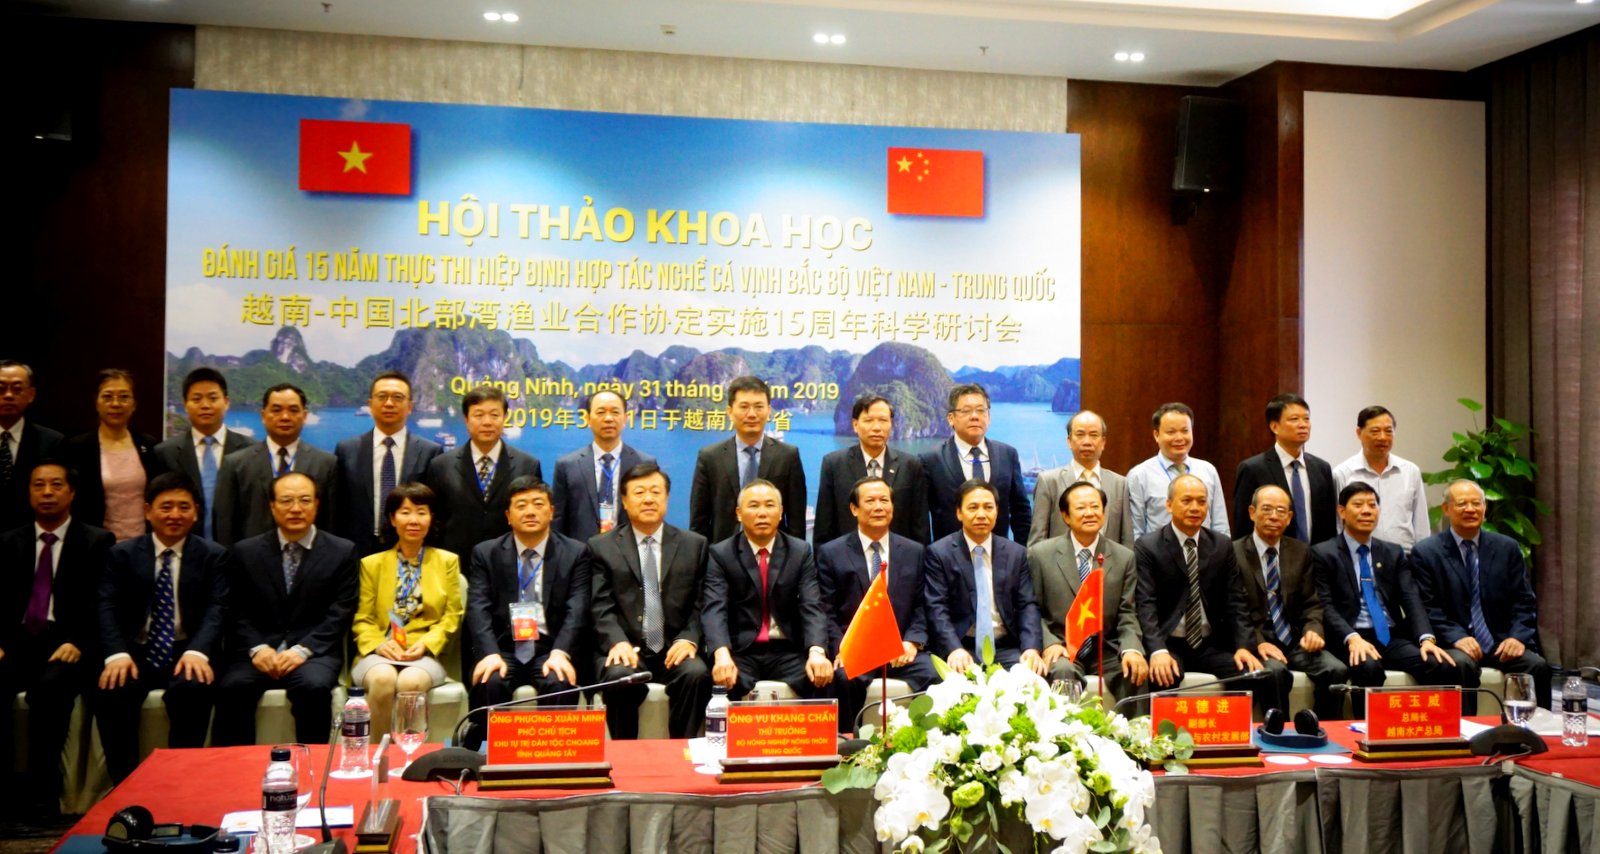 Lãnh đạo hai nước Việt Nam - Trung Quốc chụp ảnh lưu niệm tại Hội thảo.